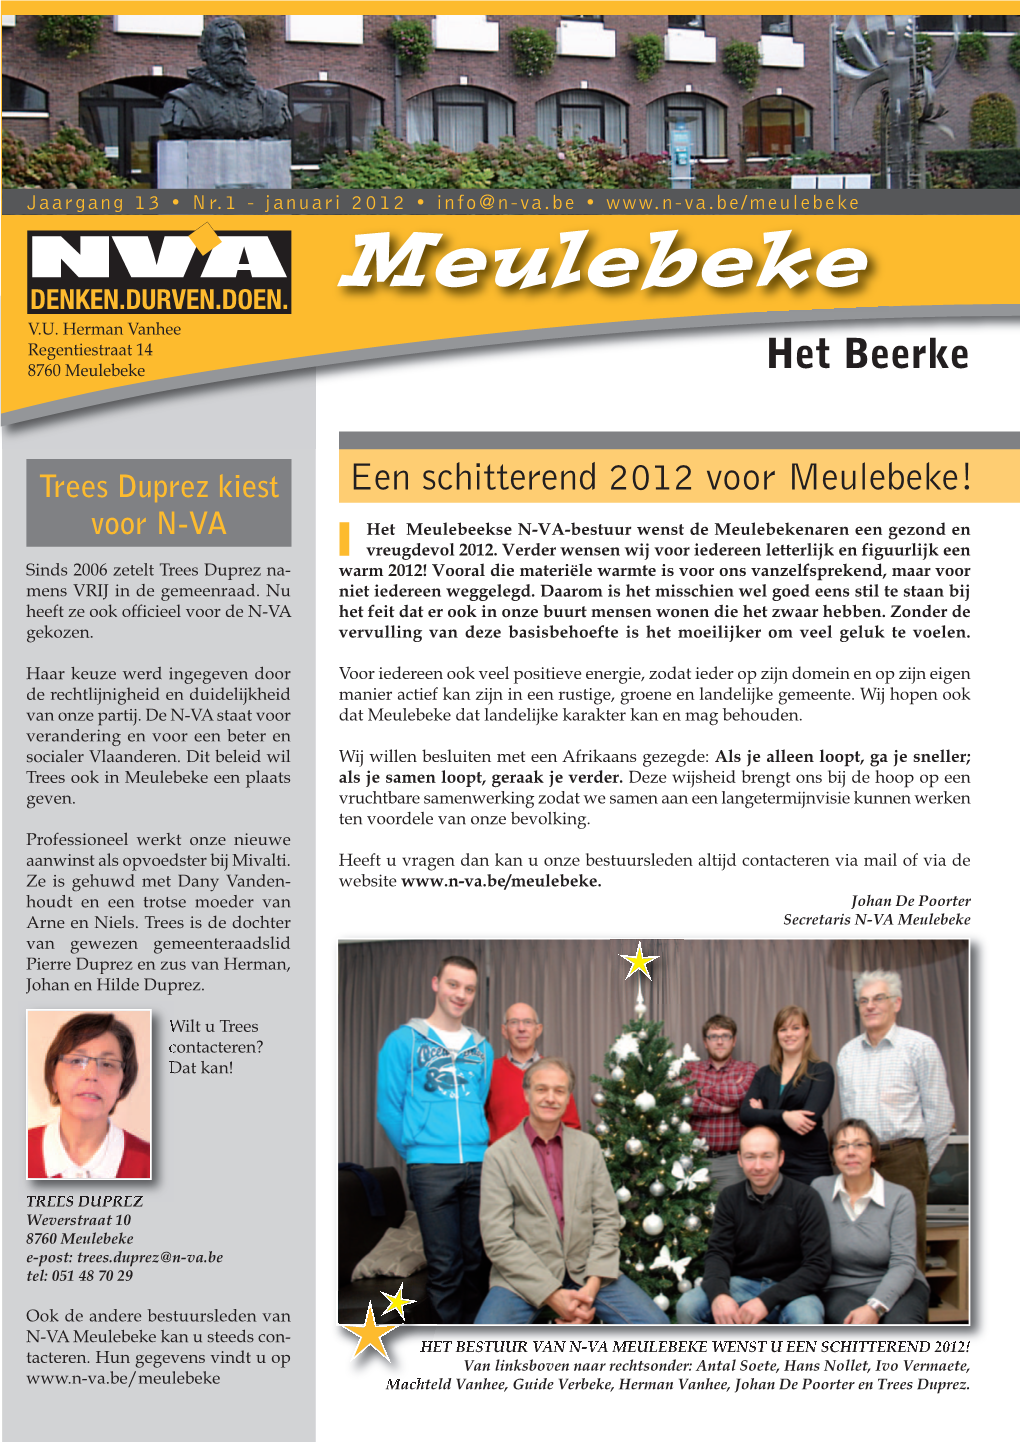 Trees Duprez Kiest Voor N-VA Het Beerke